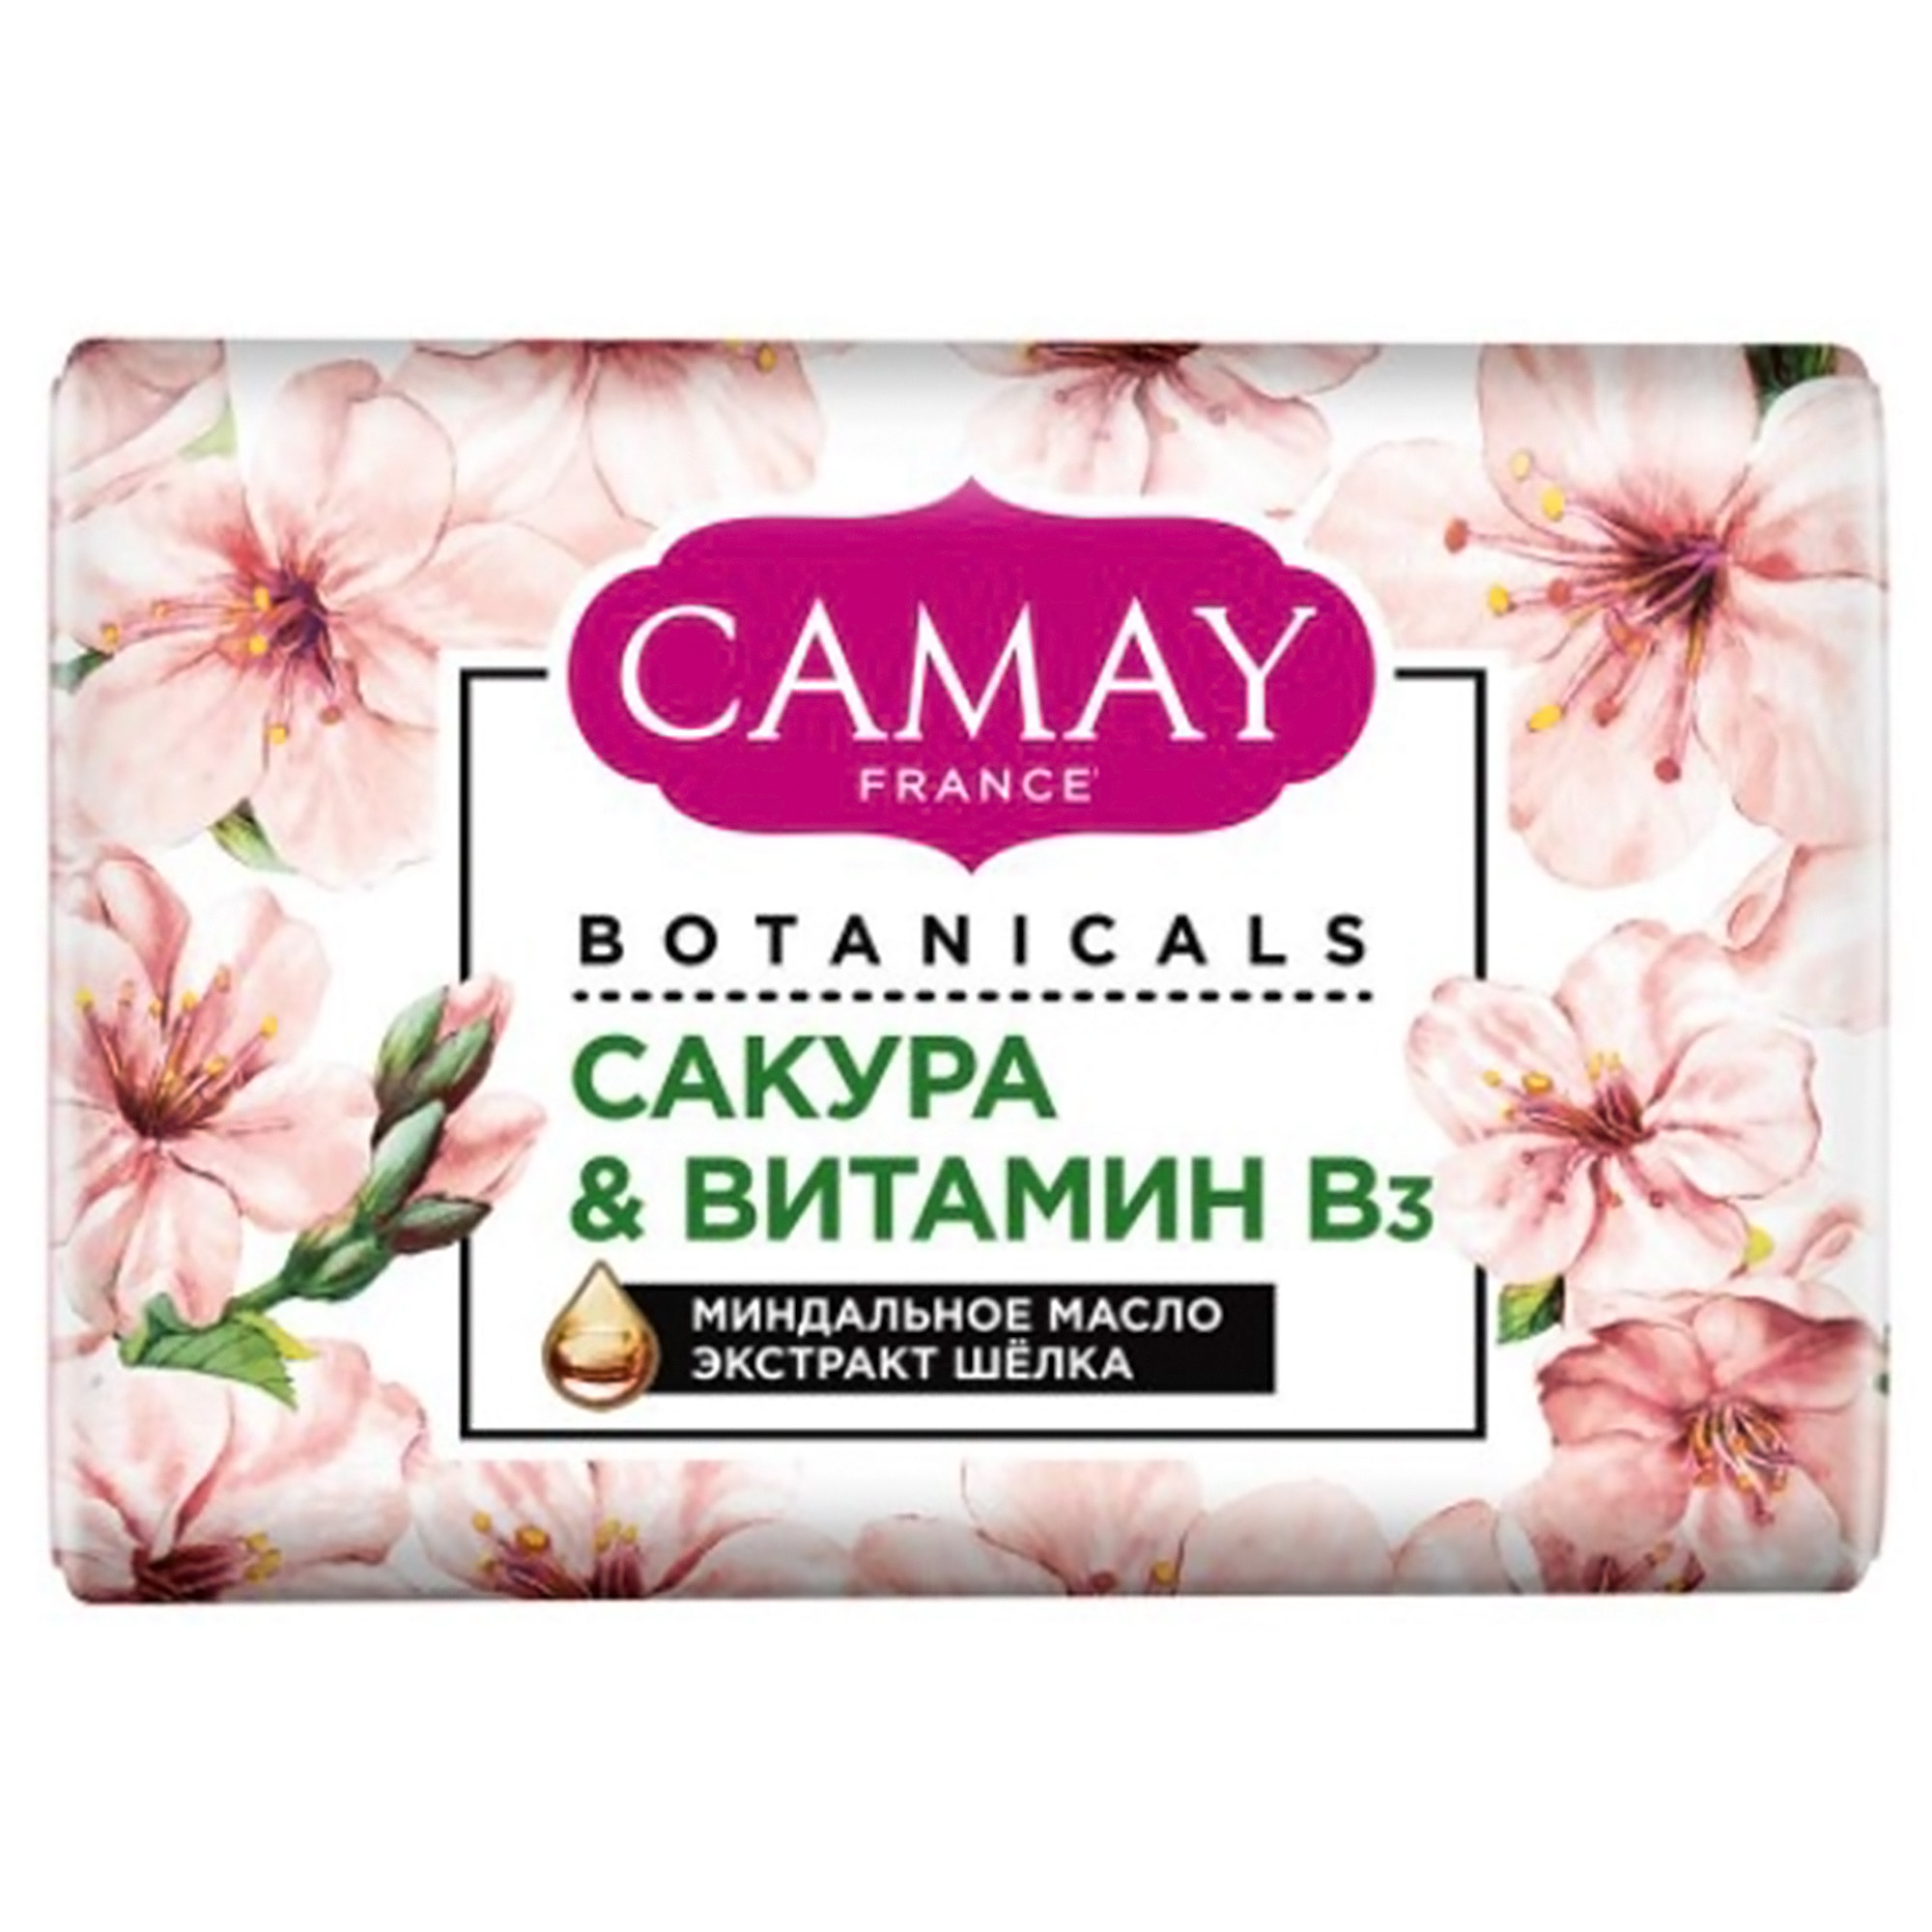 Мыло туалетное CAMAY Botanicals Японская сакура 85 г твердое мыло camay botanicals сакура и витамин b3 85 гр